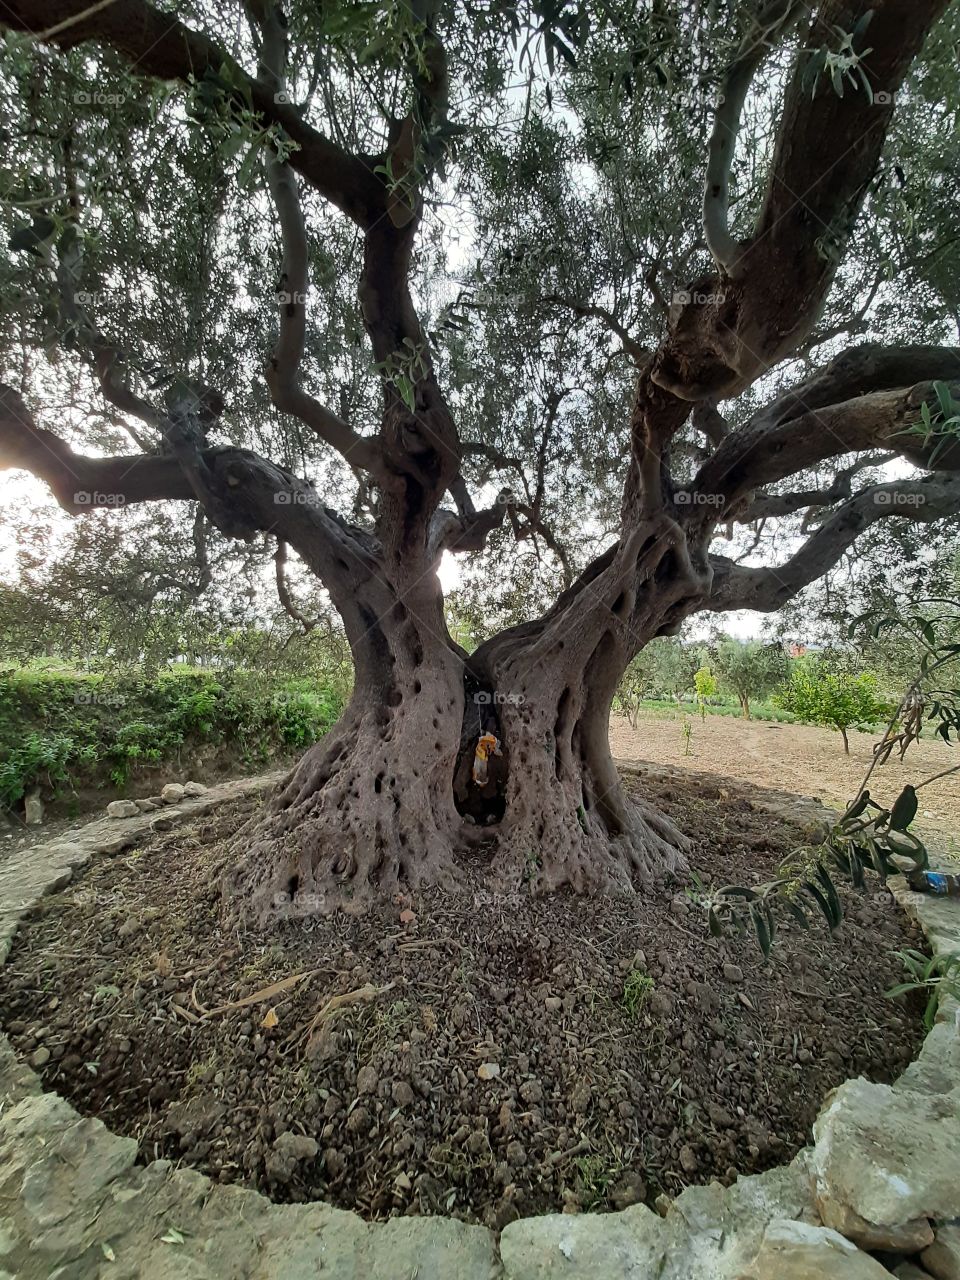 Nature, summer, old tree around 100years, 🌳🌳🌳🌳🌳🌳🌞🌞🌞🌞🌞